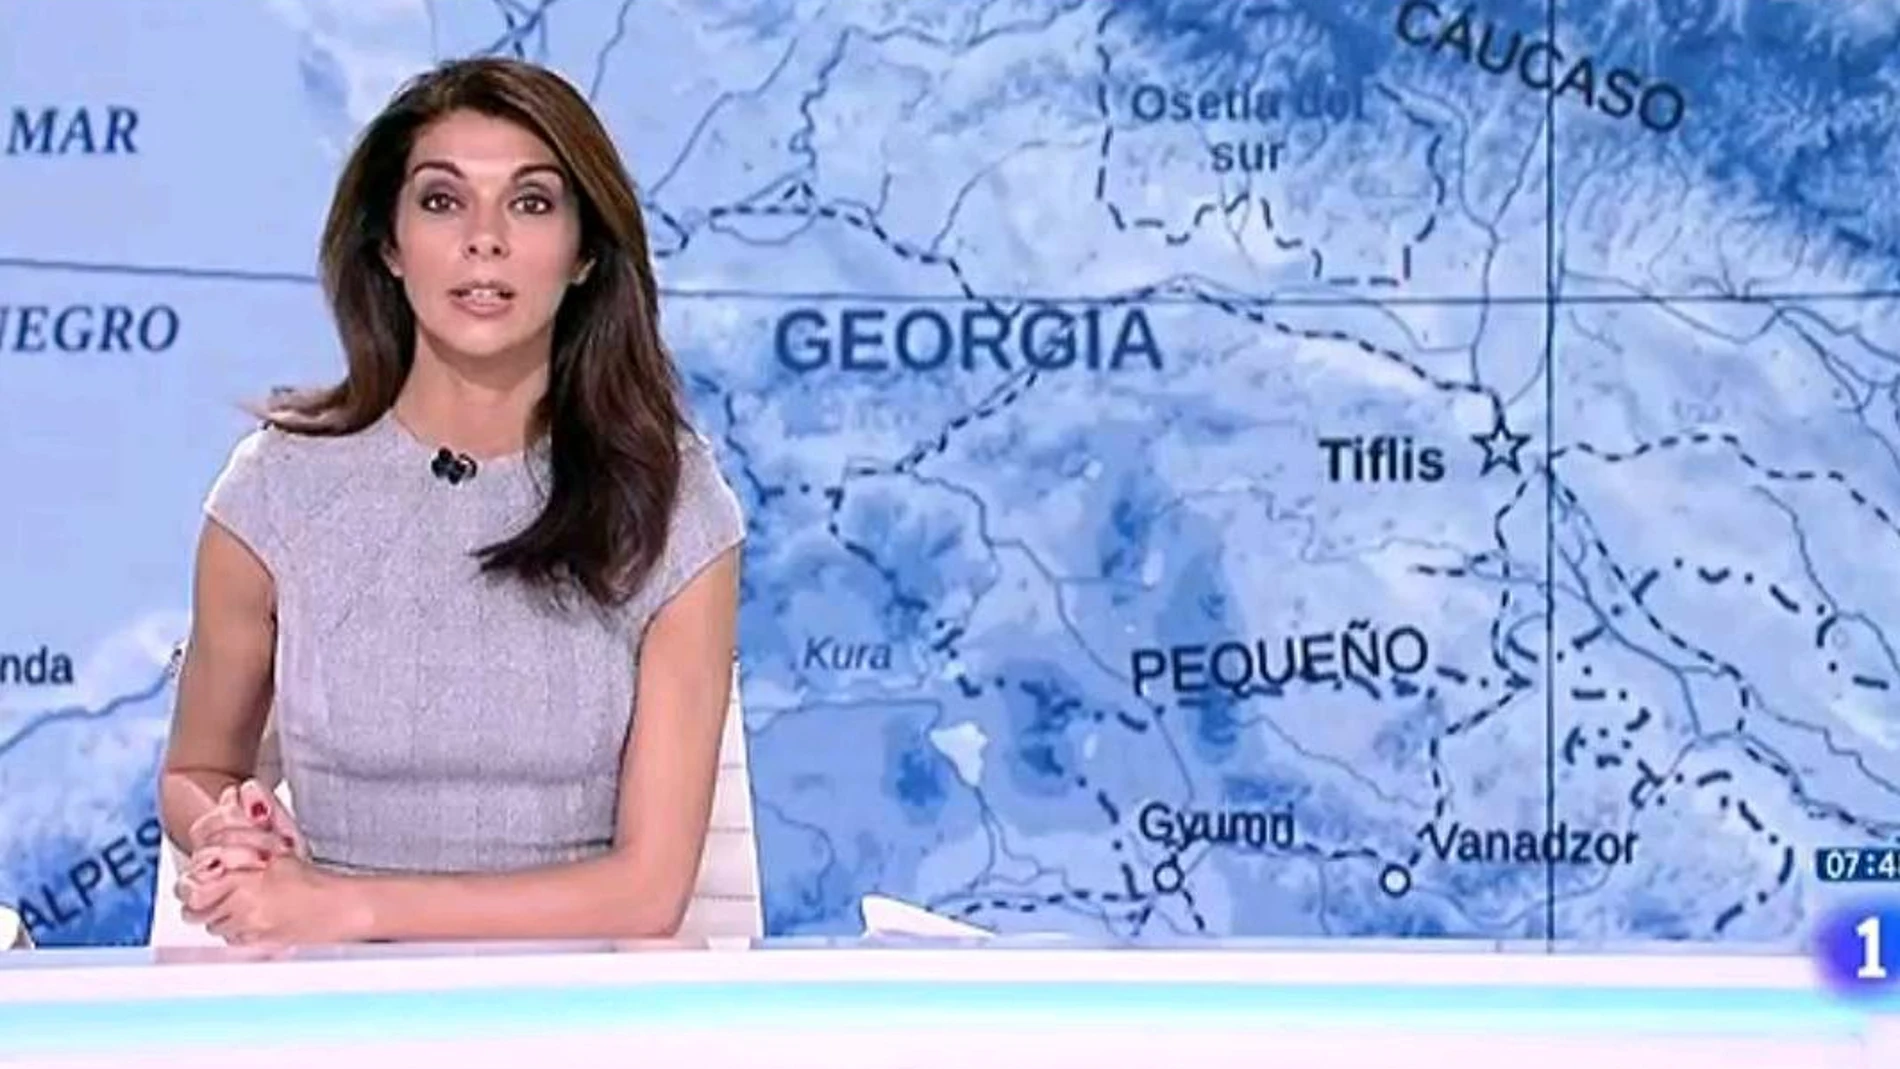 Telediario de TVE donde aparece el mapa de Georgia para hablar de Nagorno Karabaj